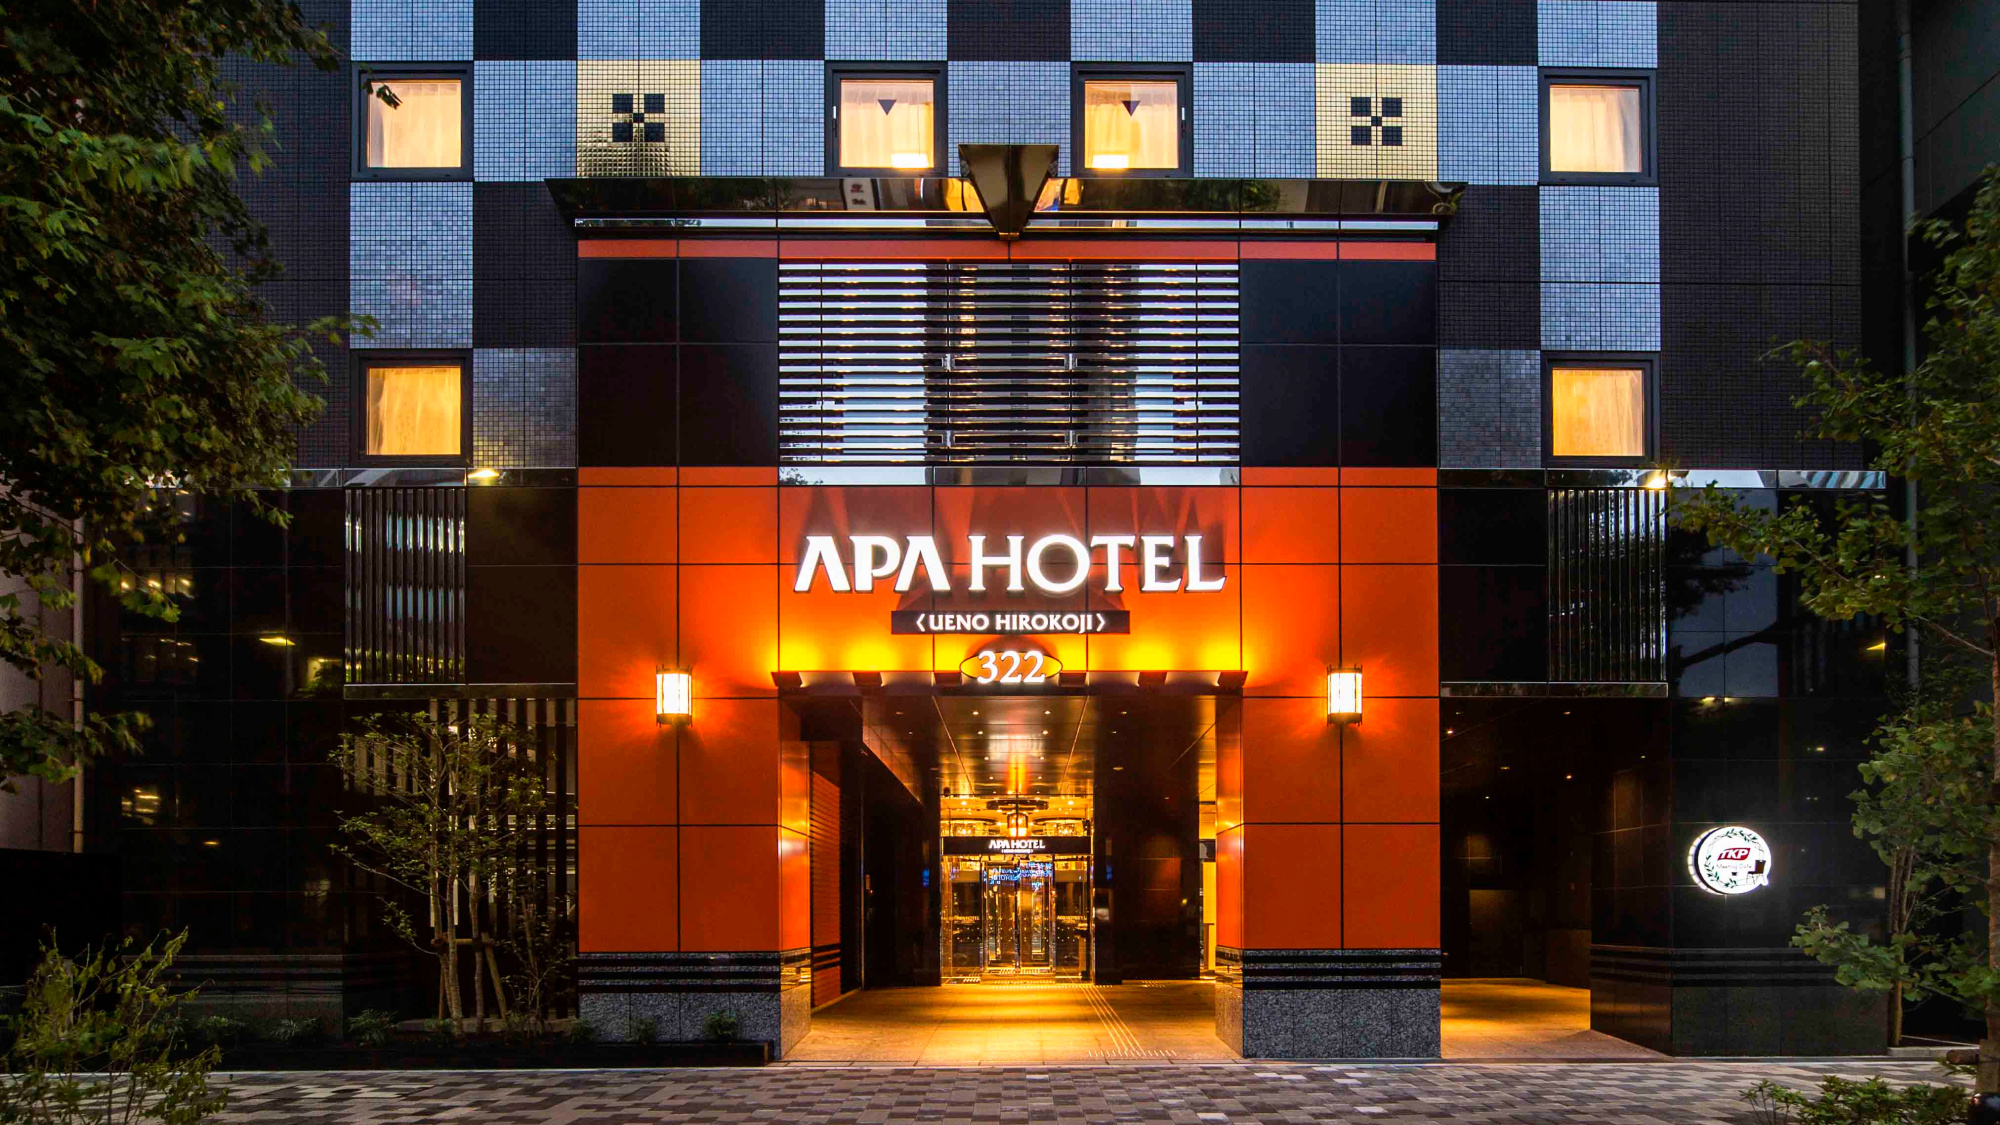 APA 호텔 우에노 히로코지